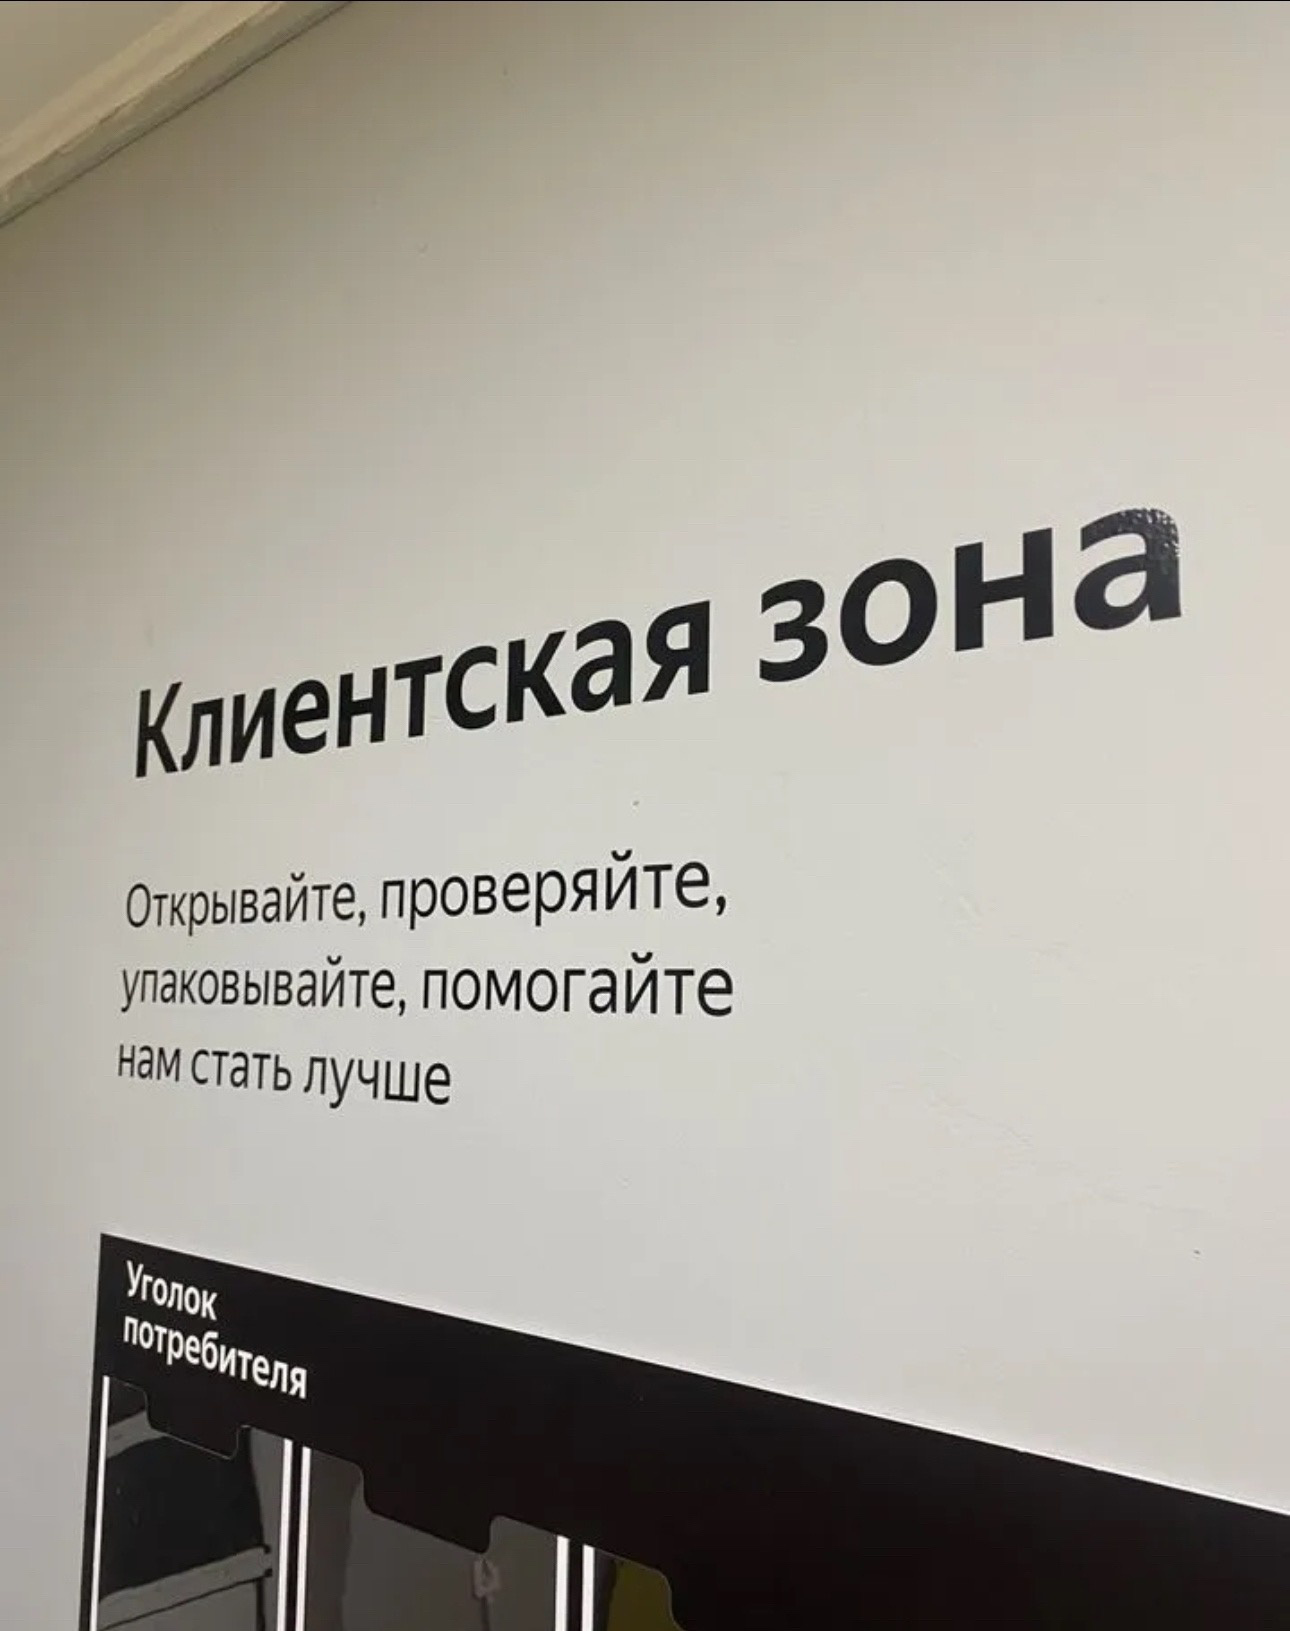 Наклейка "Клиентская зона" для пункта выдачи ЯндексМаркет